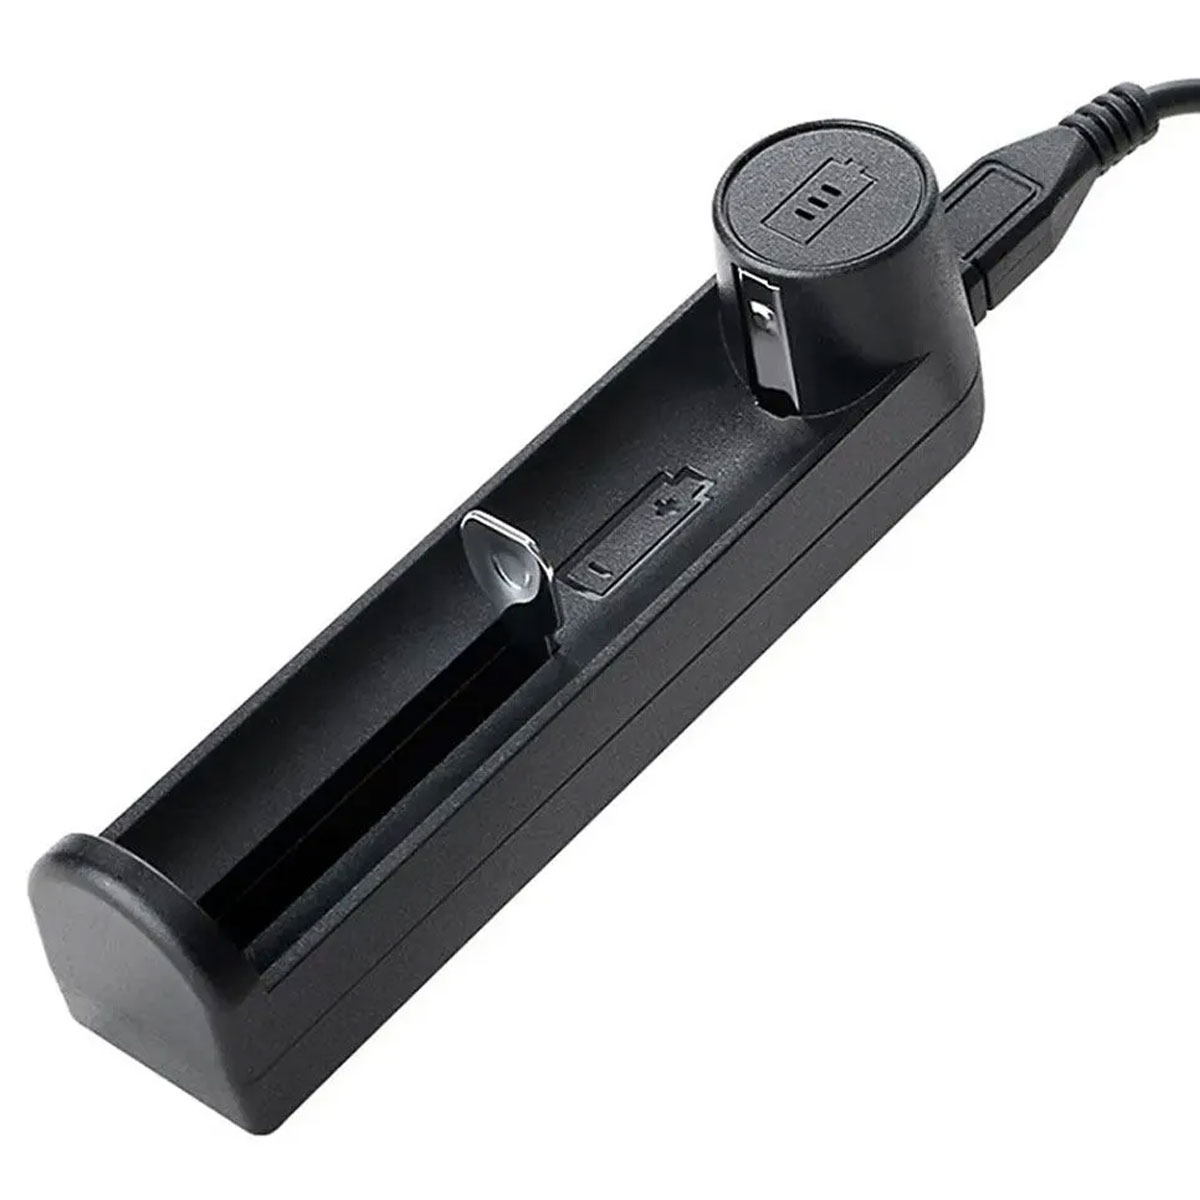 Carregador de Baterias de Lítio 18650 USB com Proteção + Cabo Micro USB